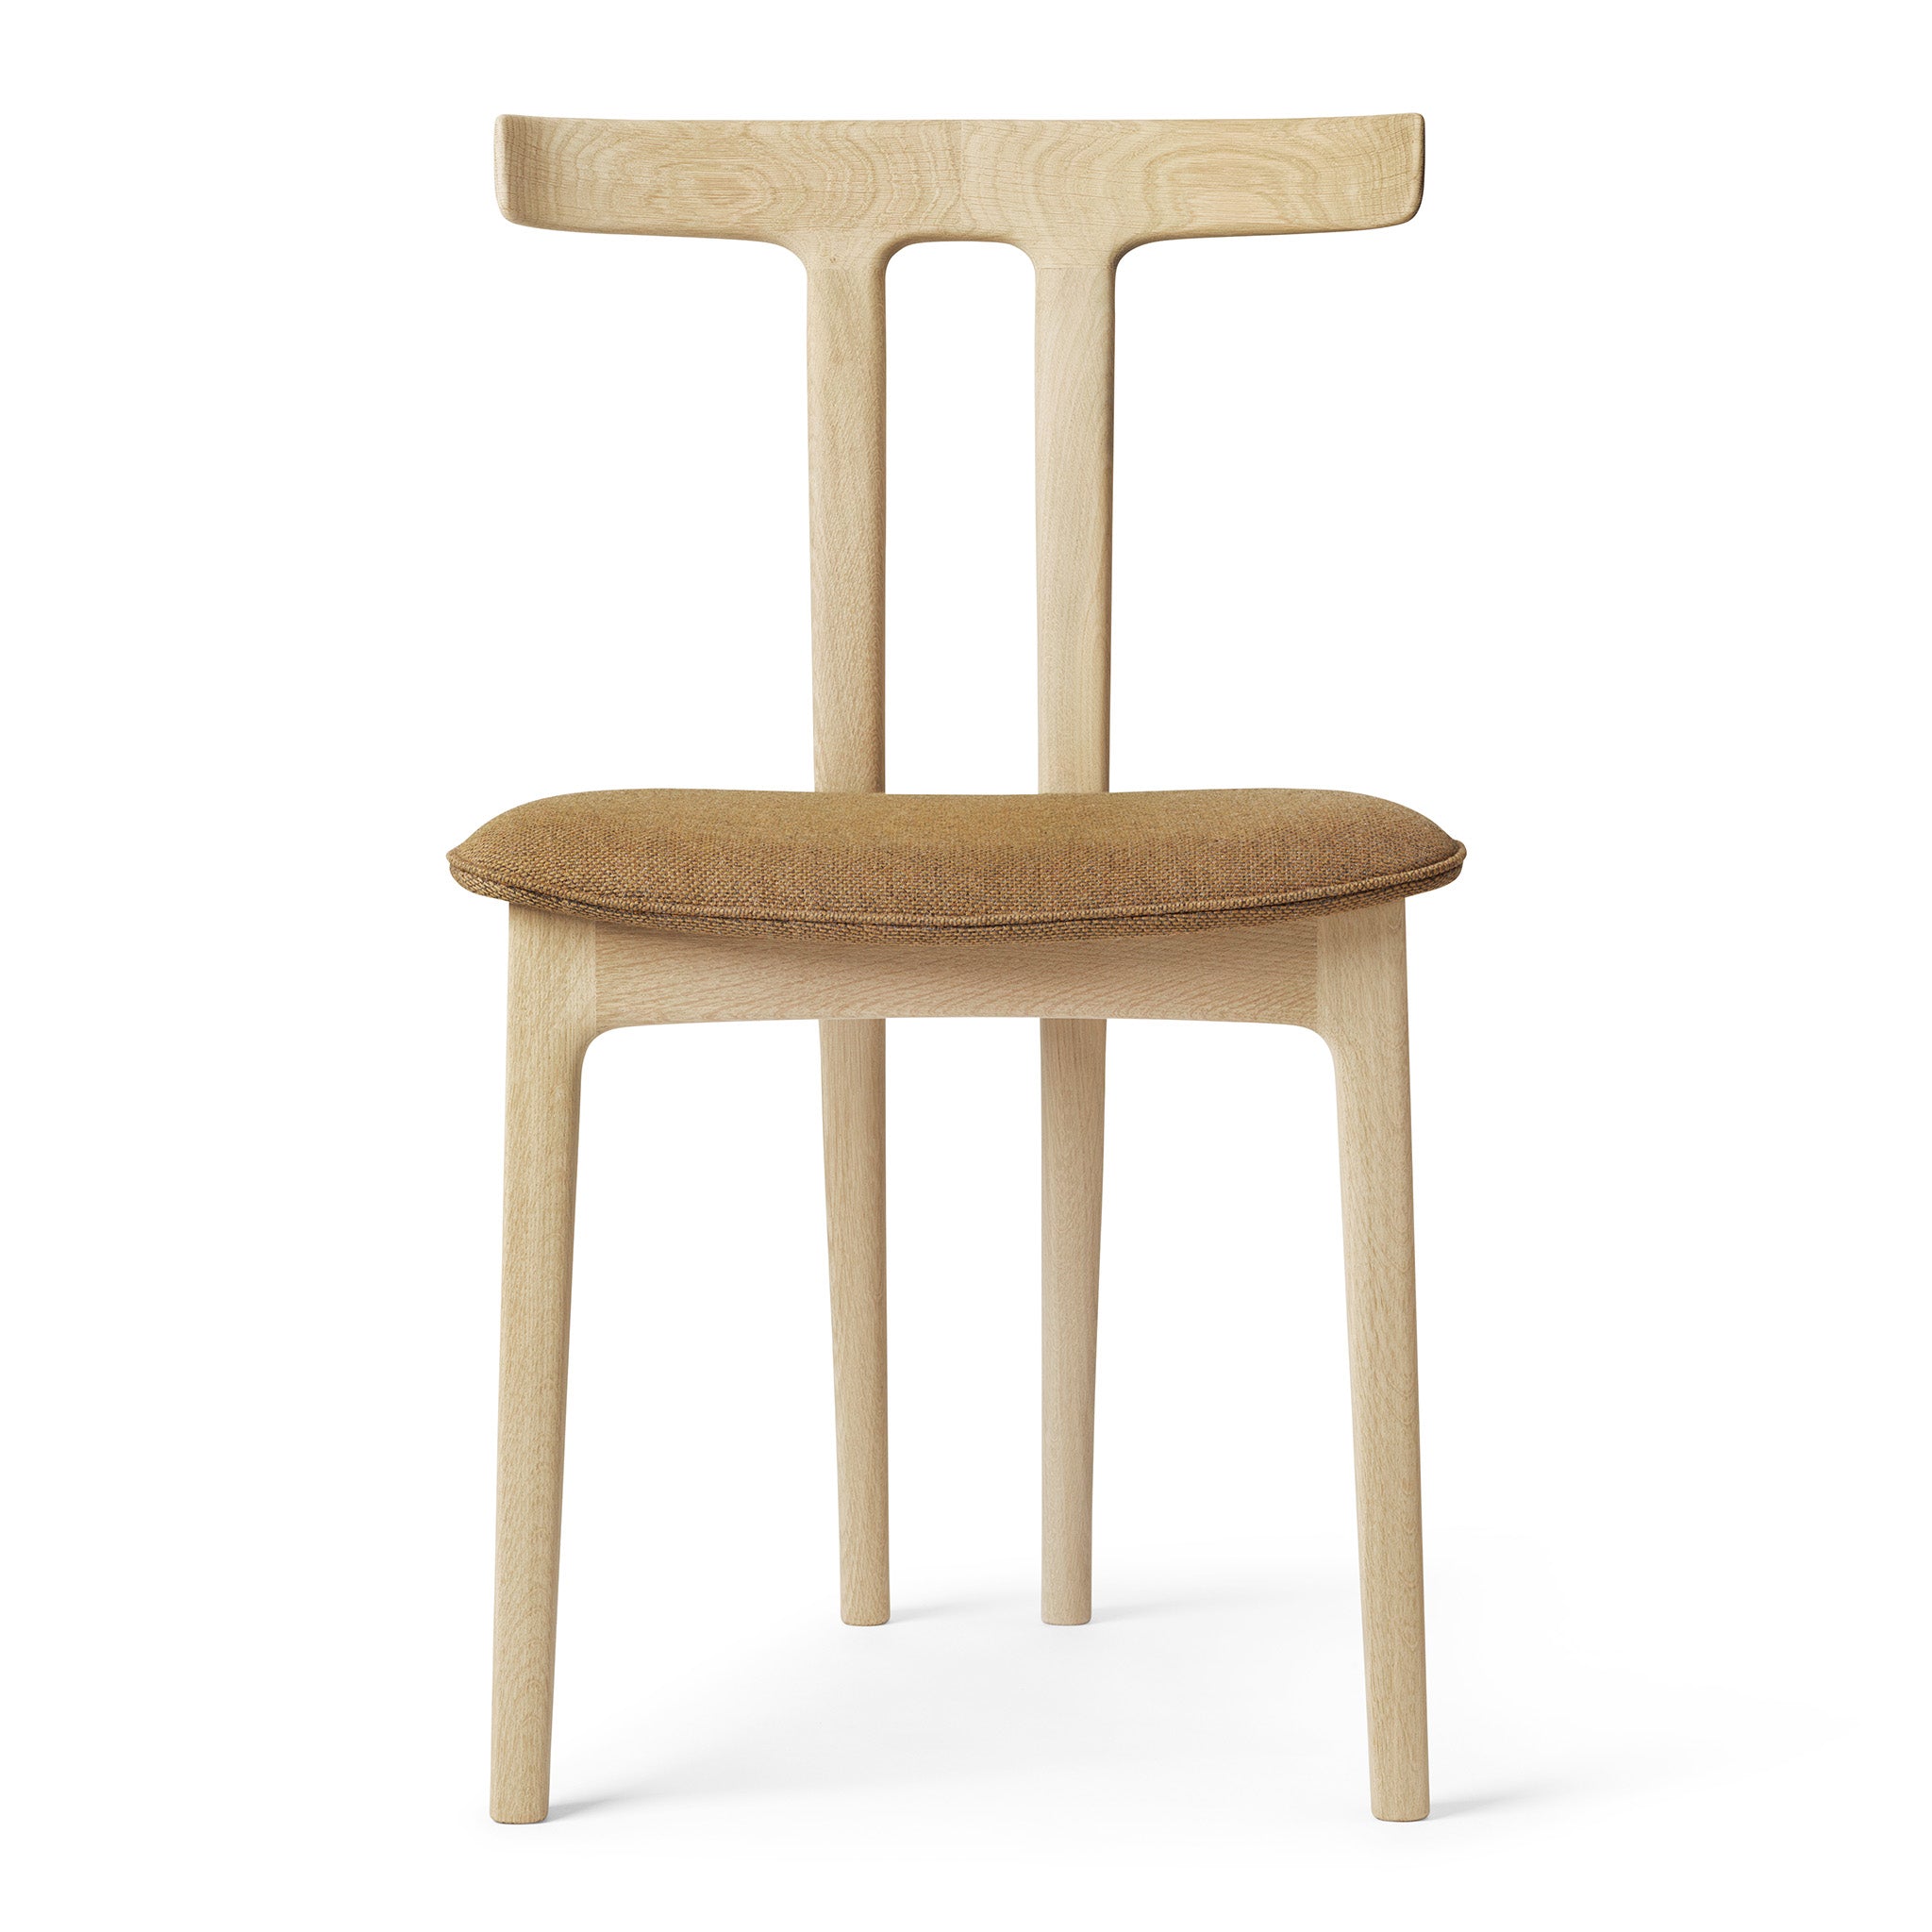 T-Chair OW58 by Carl Hansen & Søn